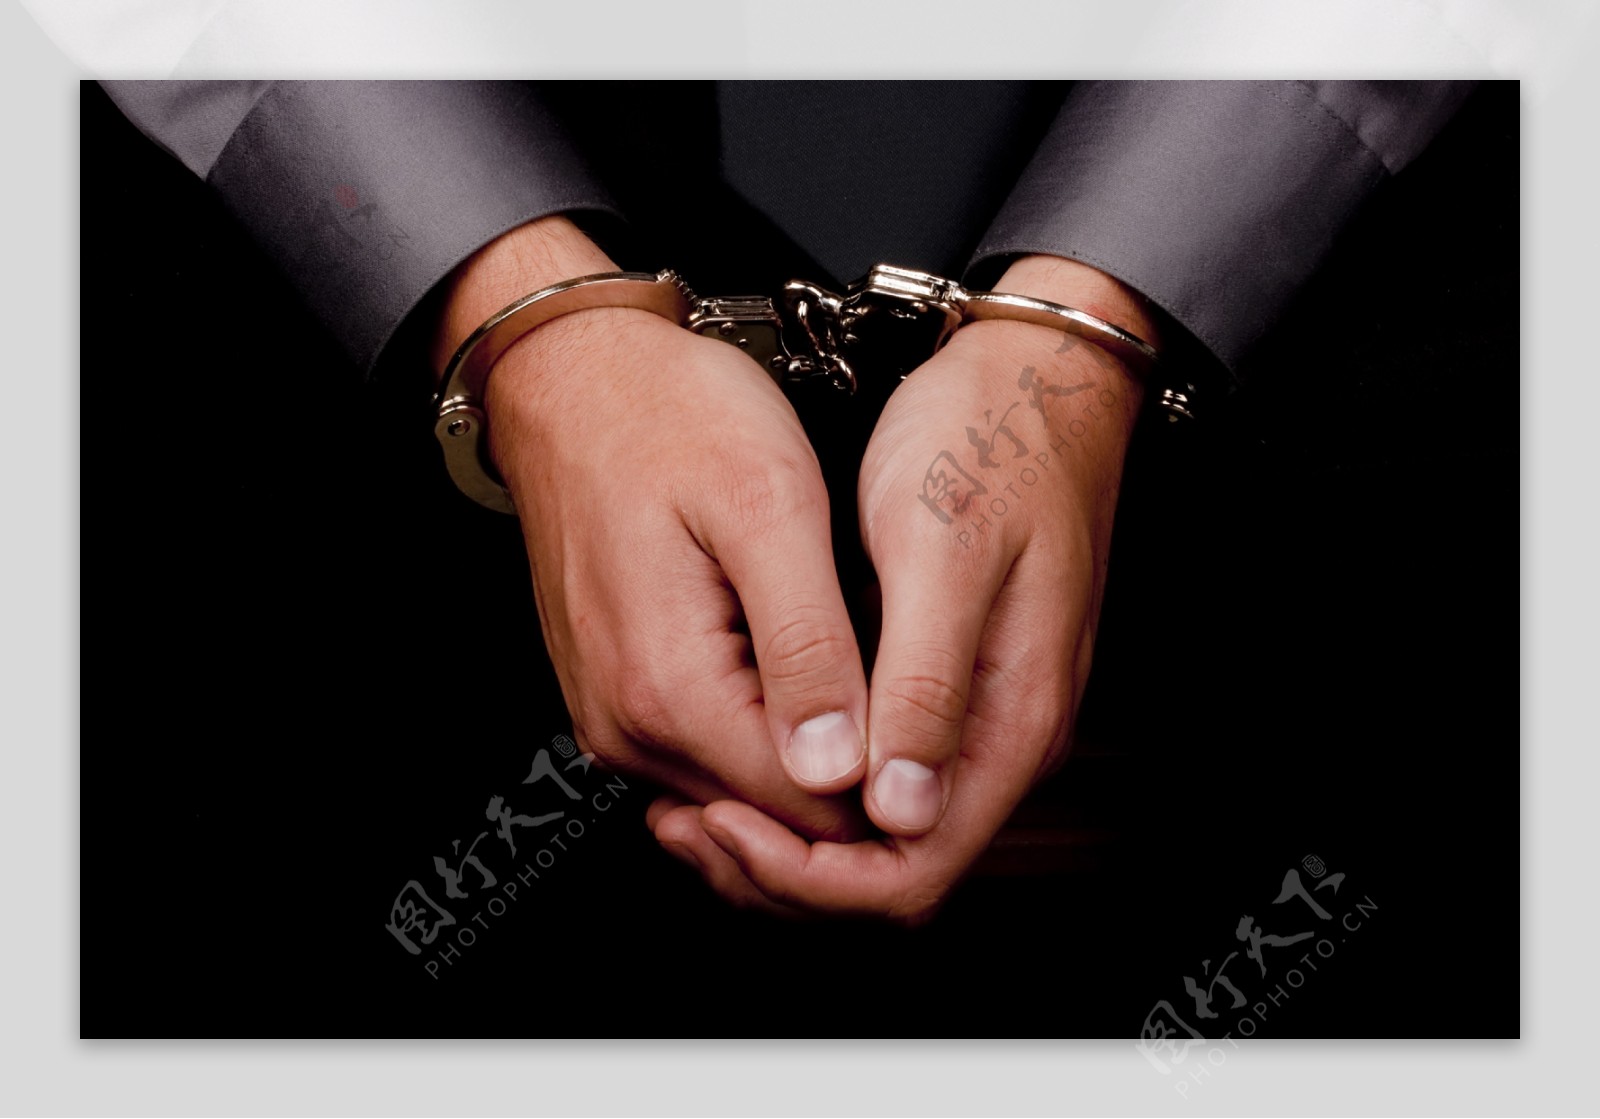 妇女橙色监狱把外形舌头扣上手铐 库存照片. 图片 包括有 监狱, 犯罪, 分裂, 女性, 成套装备, 健康 - 32958100